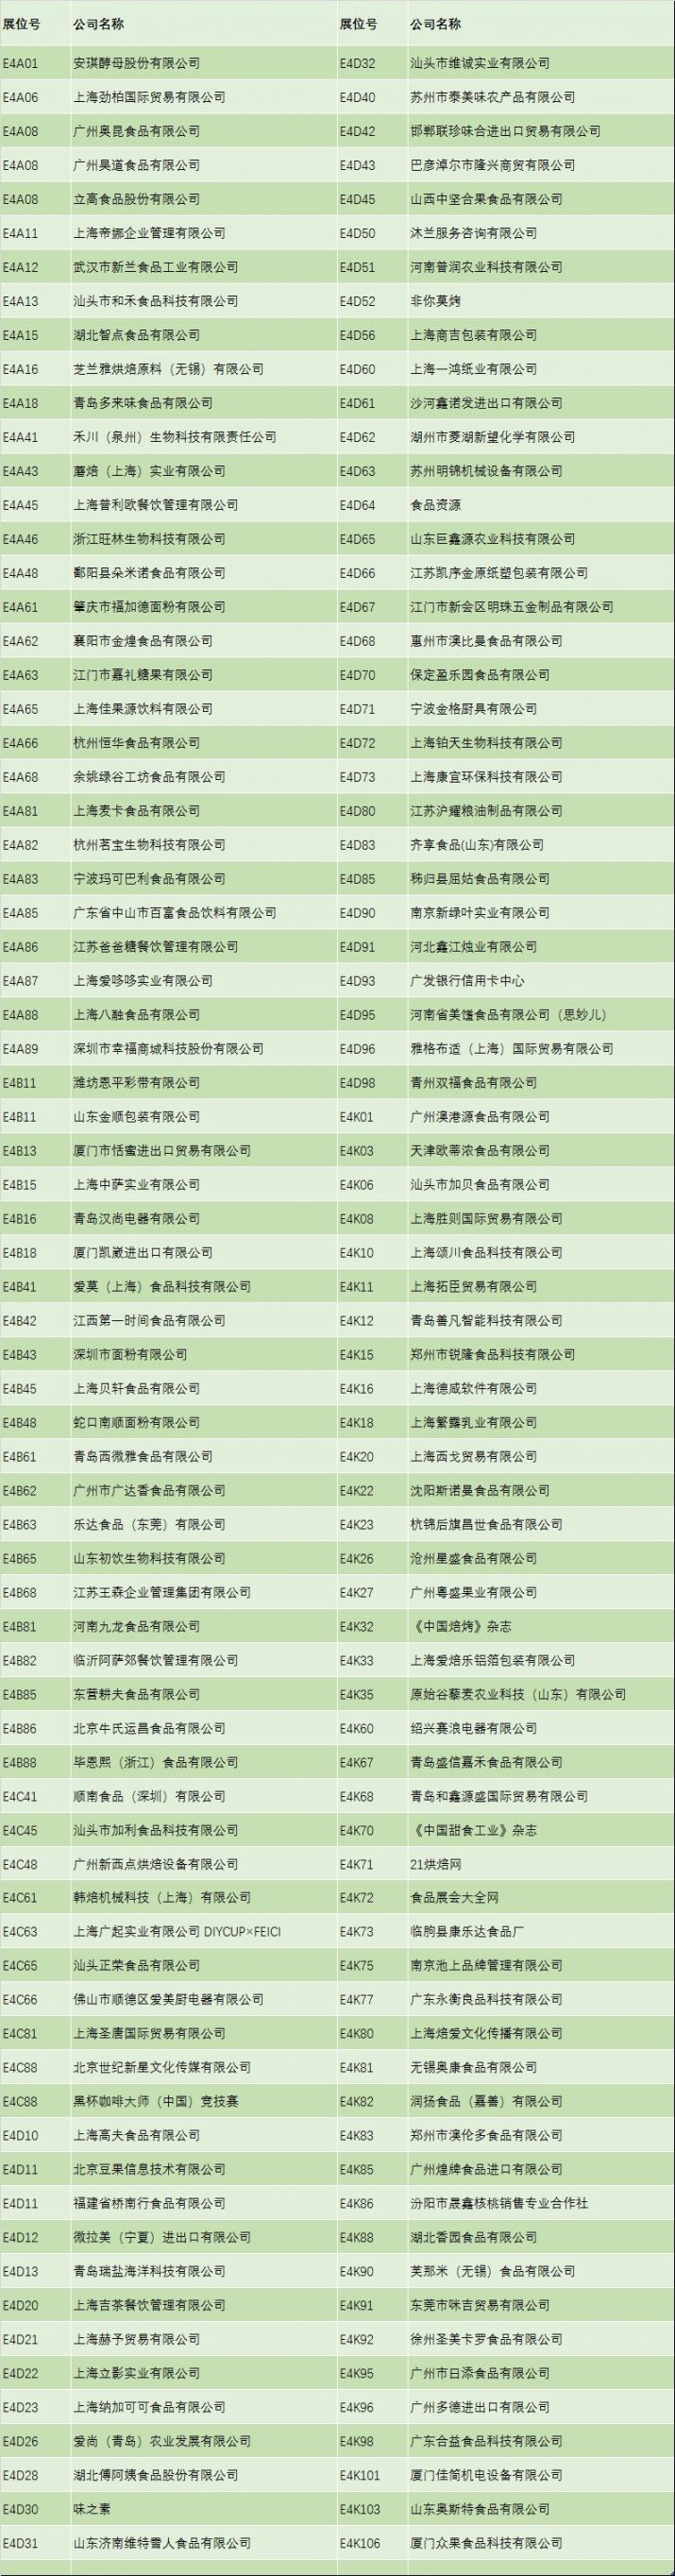 2020上海烘焙展参展企业名单